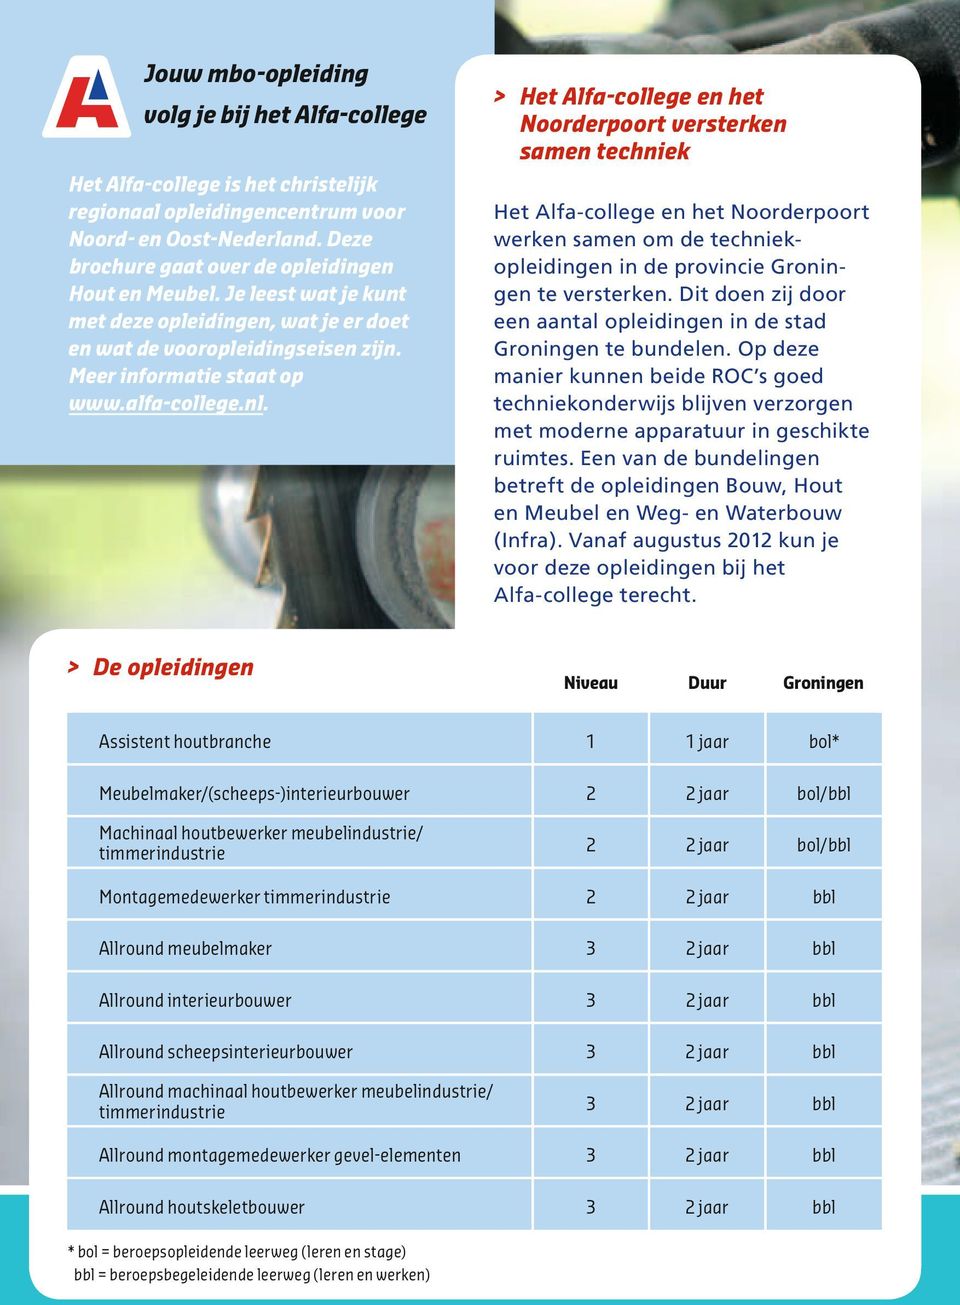 >> Het Alfa-college en het Noorderpoort versterken samen techniek Het Alfa-college en het Noorderpoort werken samen om de techniek opleidingen in de provincie te versterken.